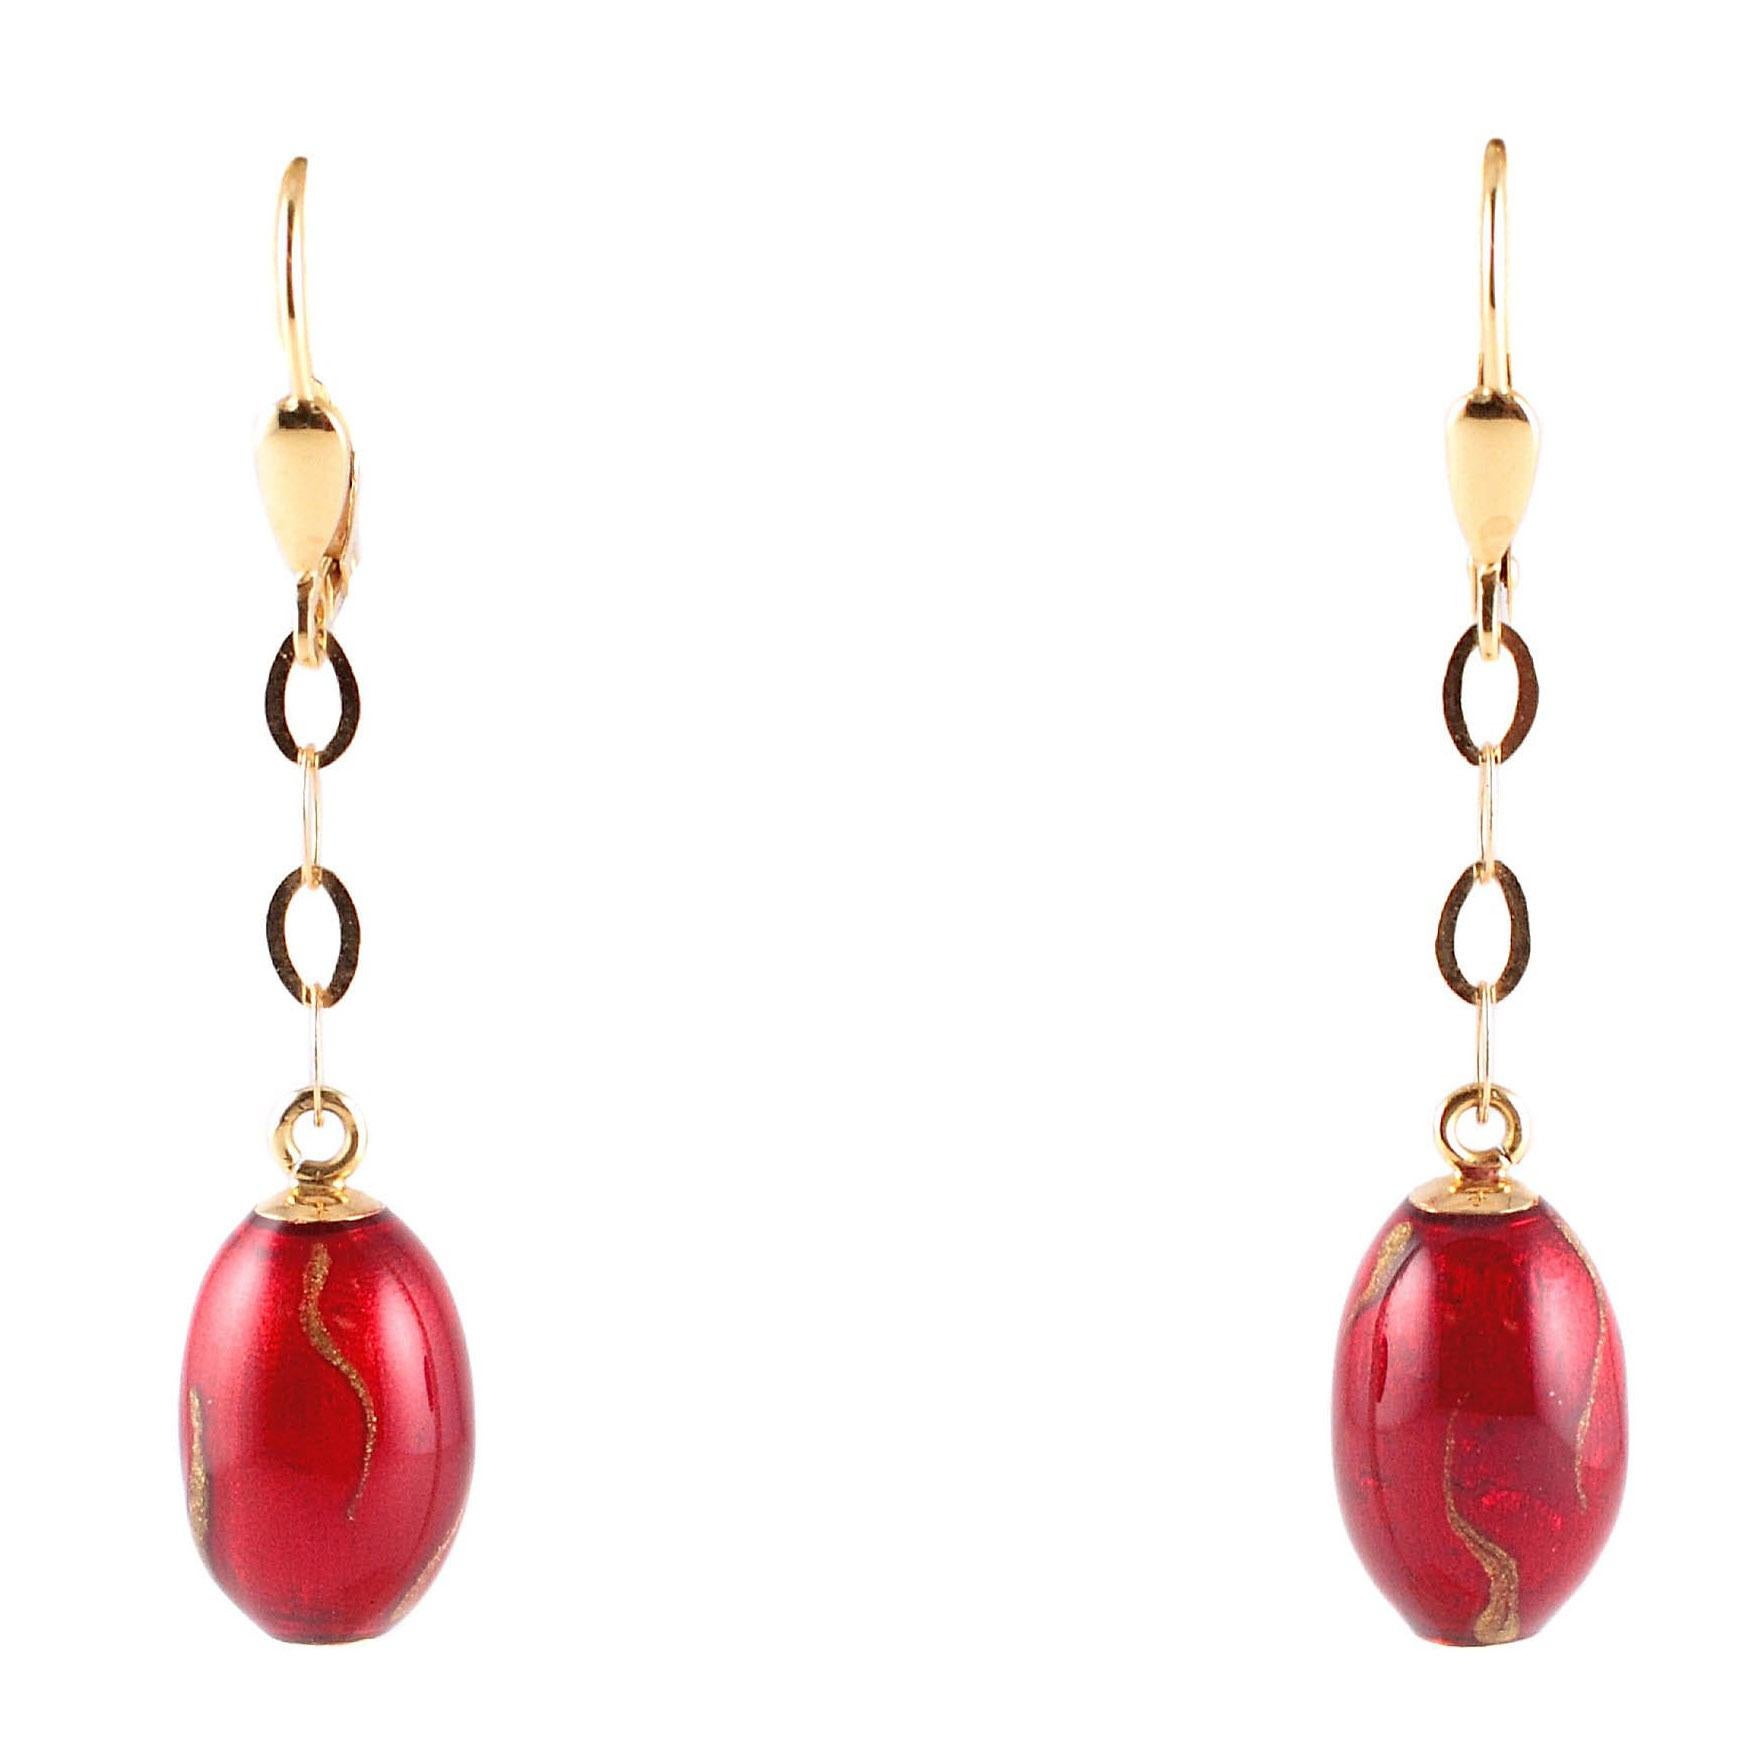 Red Gold Enamel 18 Karat Yellow Gold Earrings, by Soho